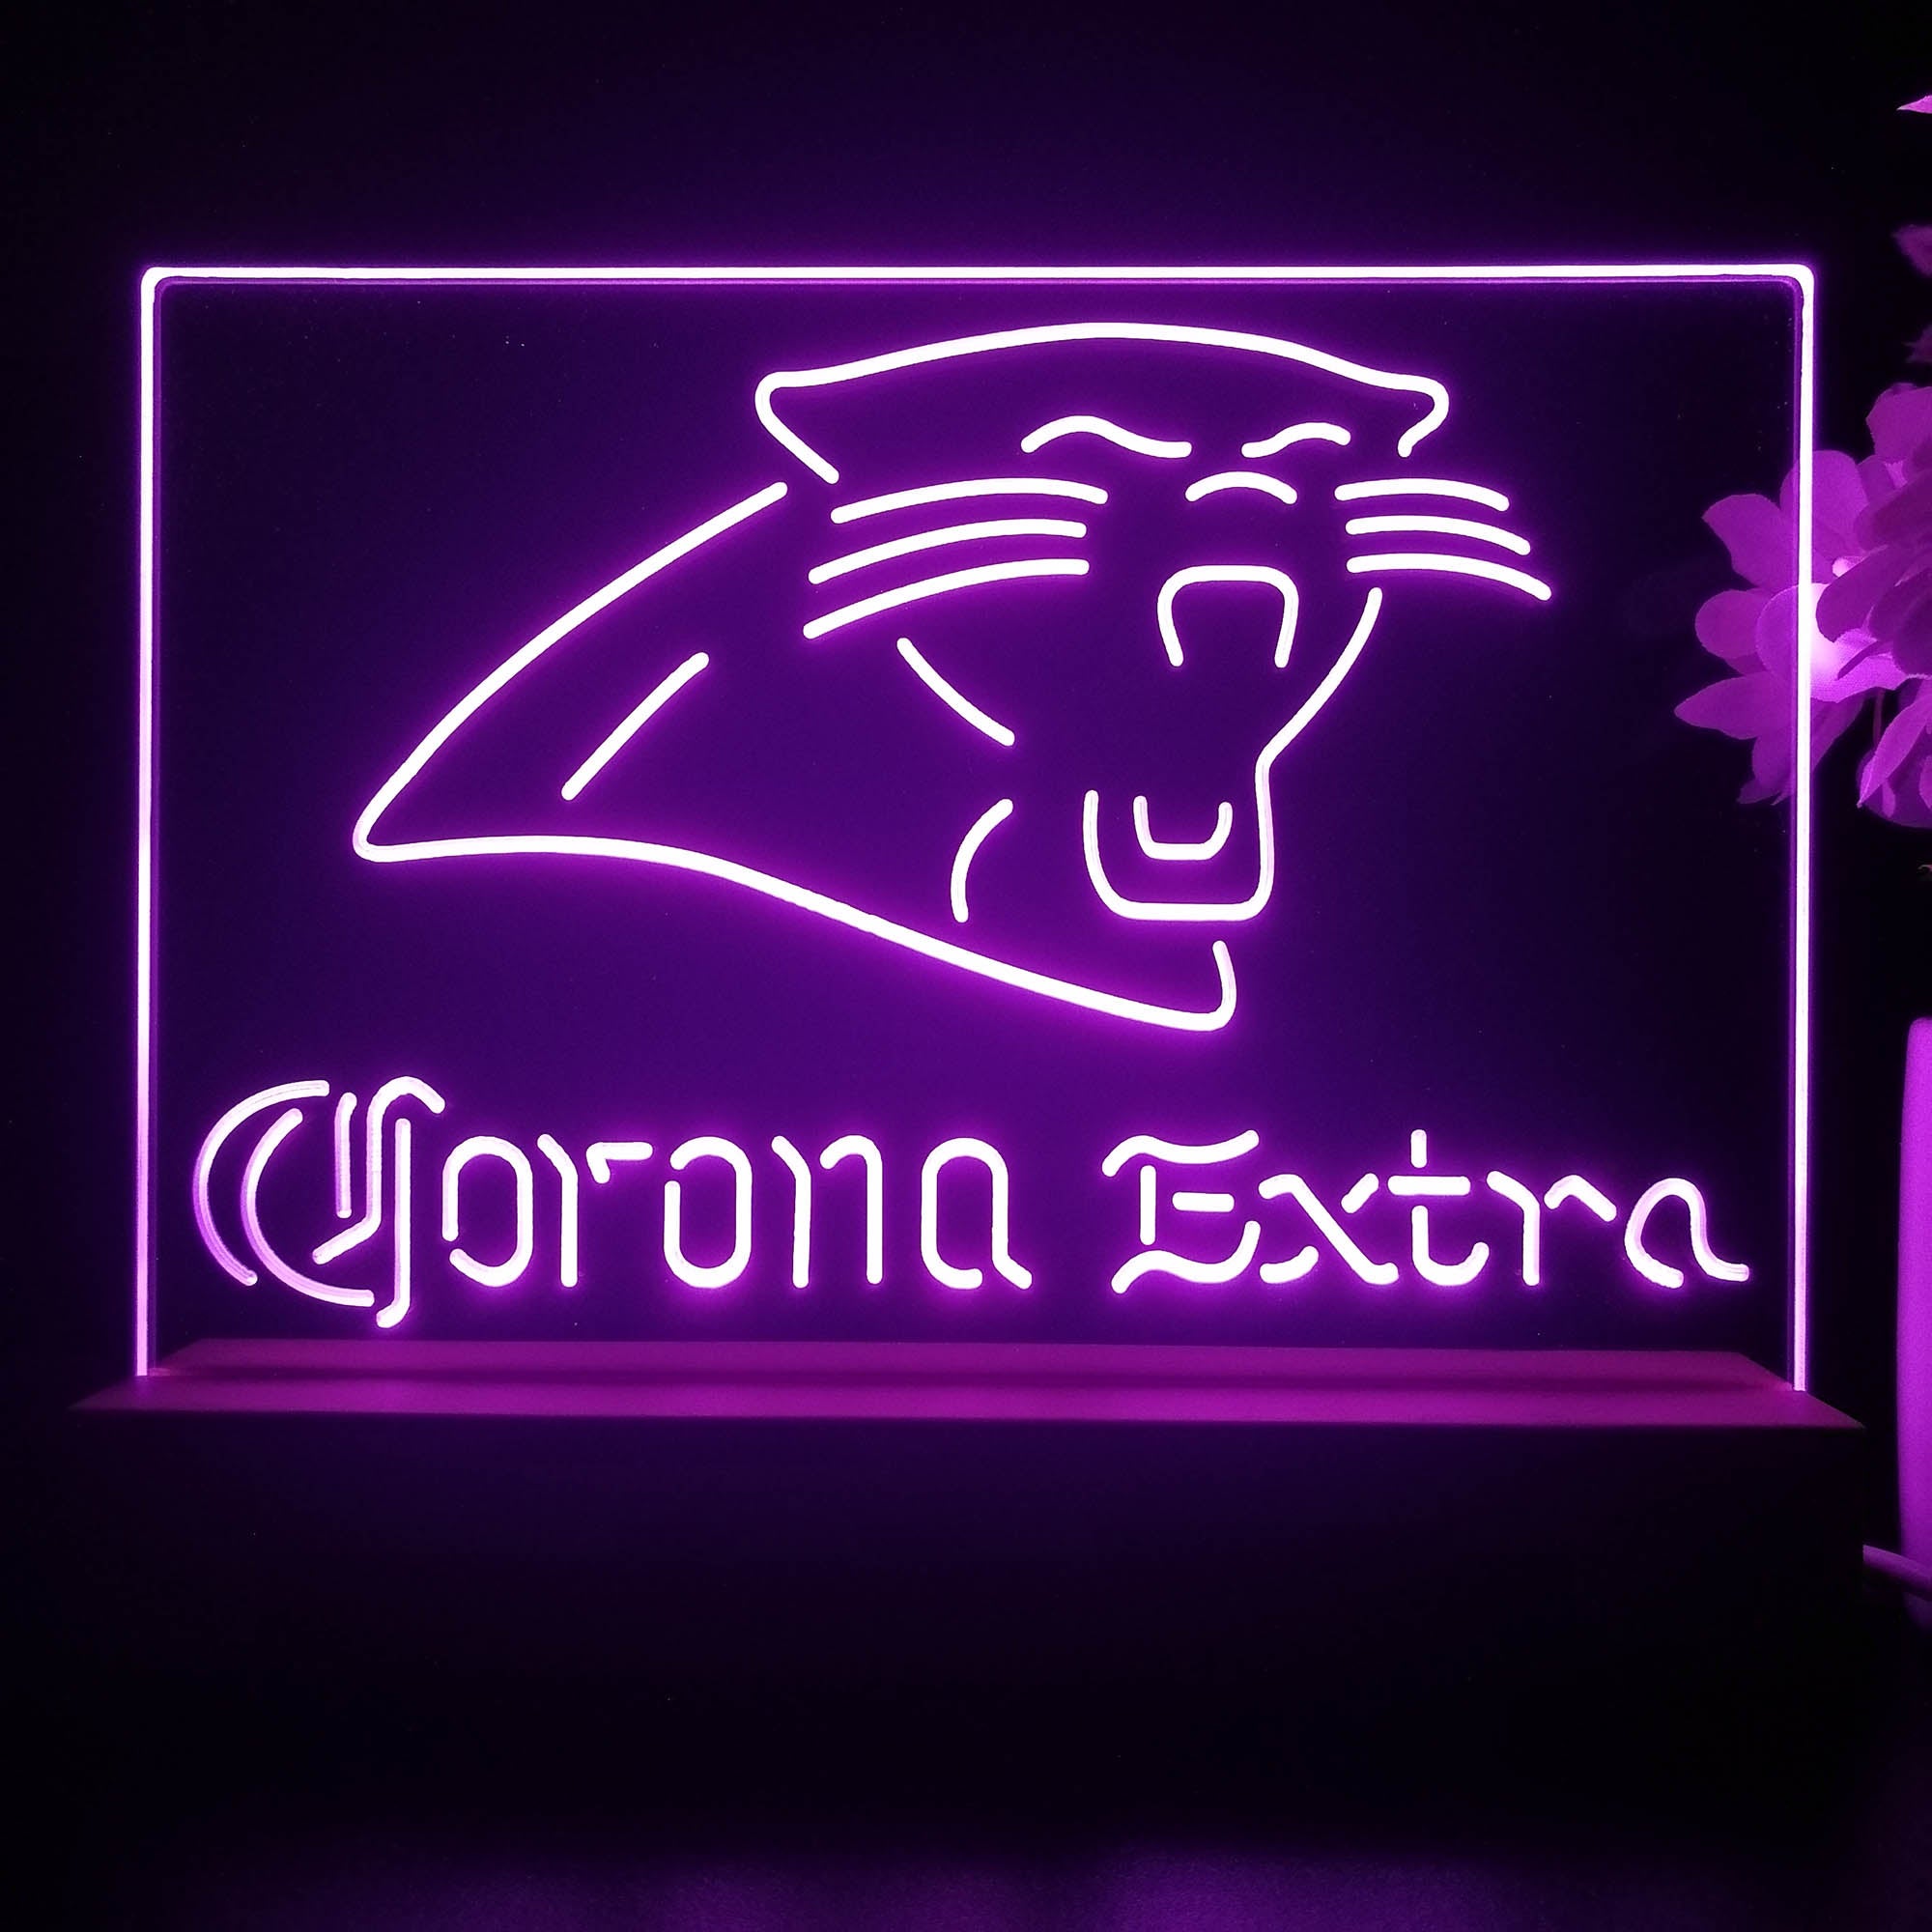 Corona Extra Bar Carolina Panthers Est. 1995 Night Light Pub Bar Lamp